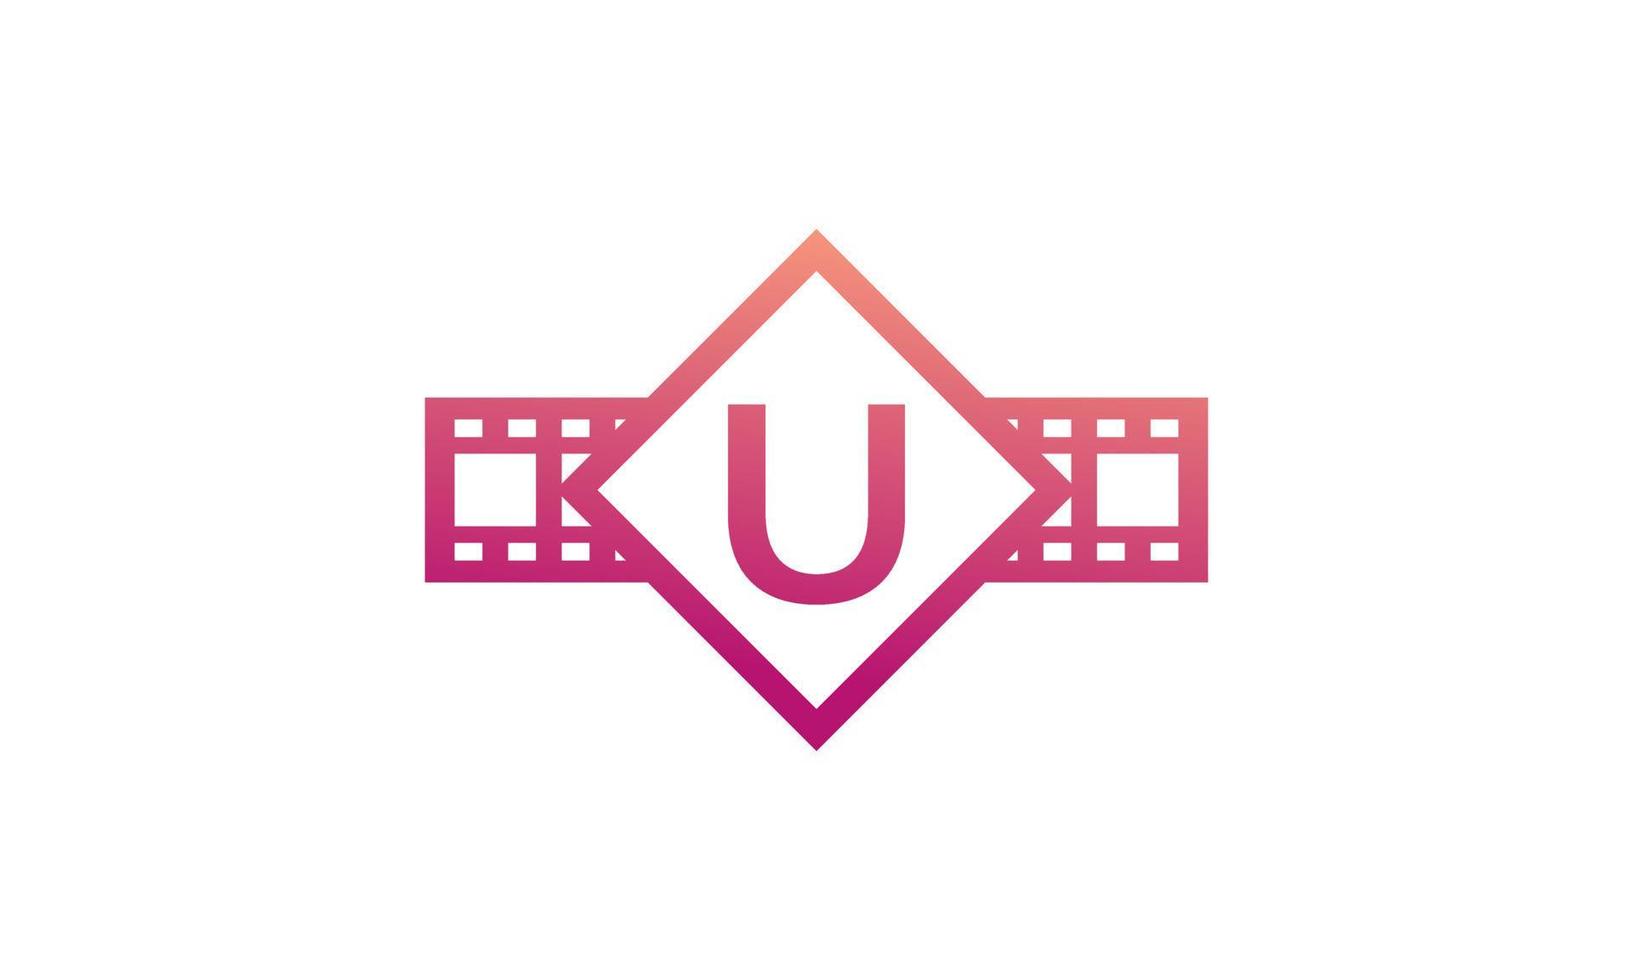 lettre initiale u carré avec bandes de bobine pellicule pour film cinéma studio de production logo inspiration vecteur